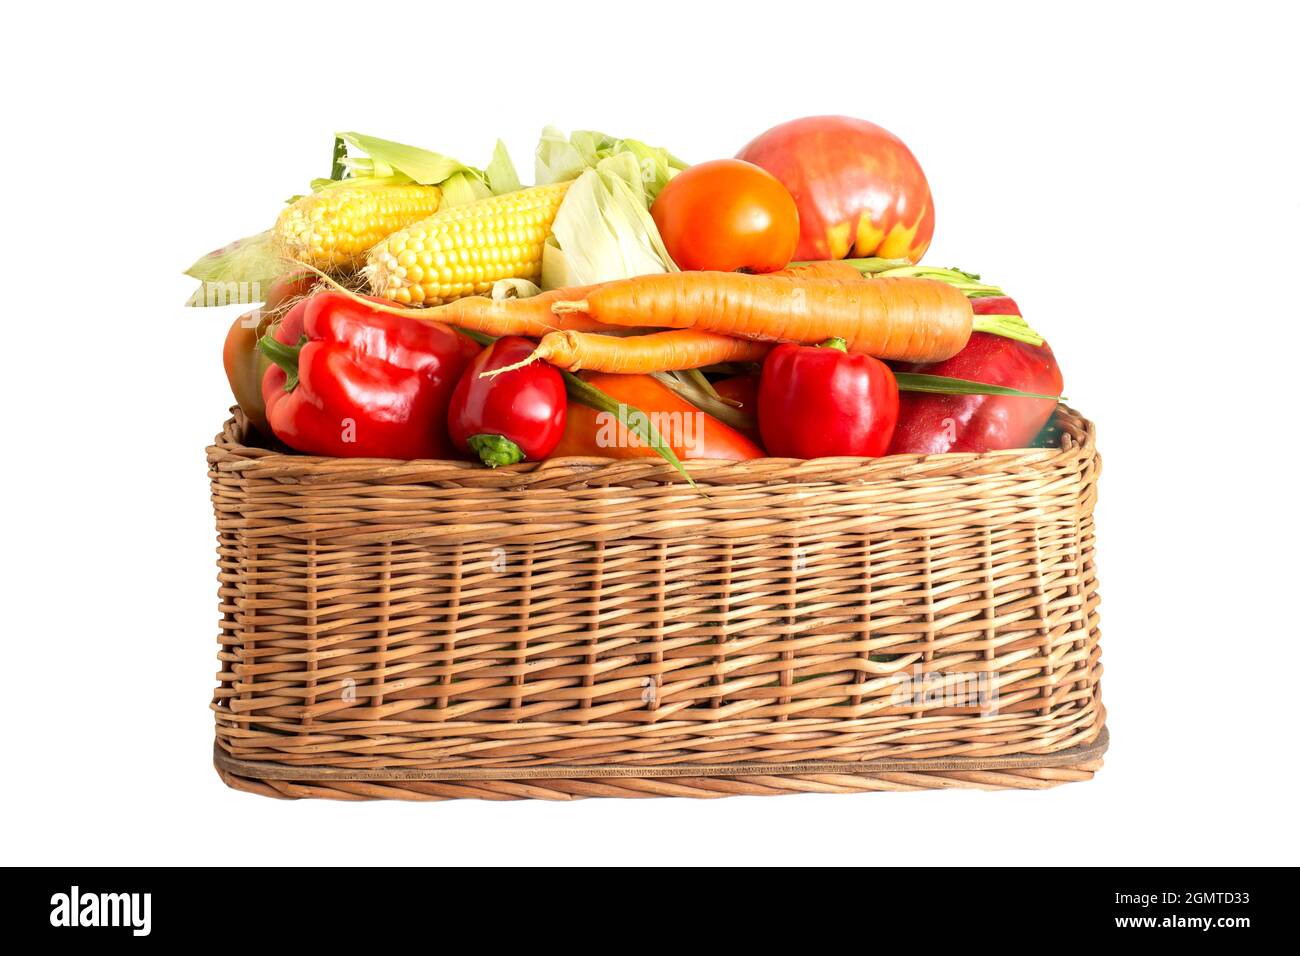 Korb mit Sommer- und Herbstgemüse auf weißem Hintergrund. Paprika, Karotten und Maiskolben mit Tomaten, isolieren, gesundes Essen Stockfoto